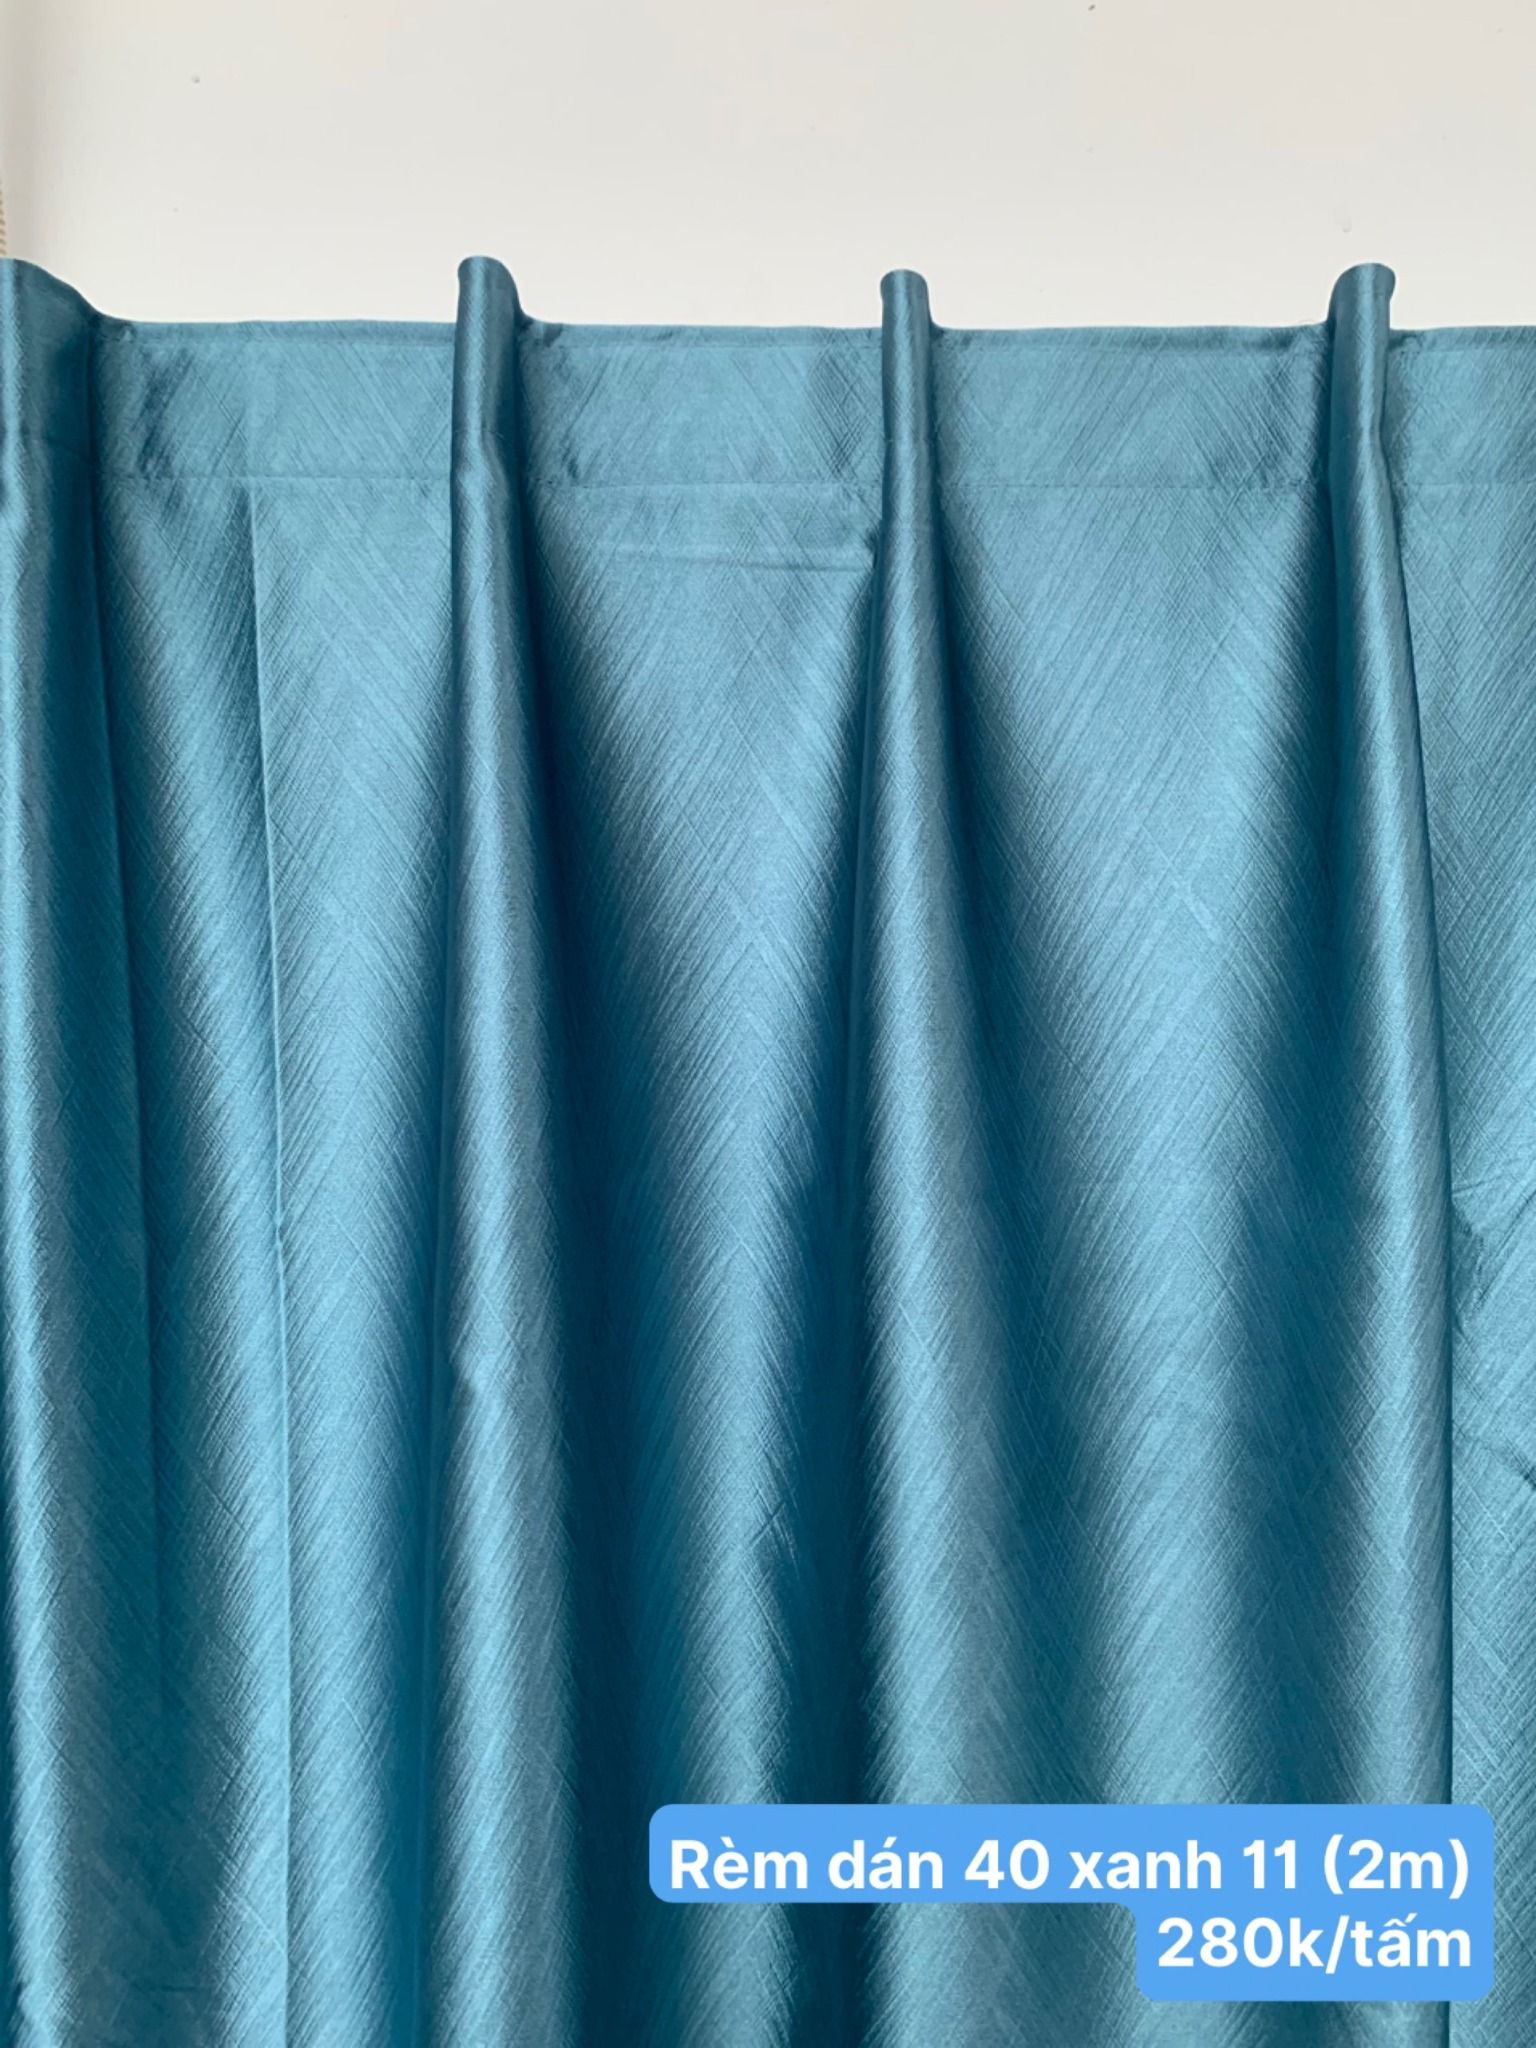  Rèm chống nắng May sẵn - Rèm Gấm 40 Họa tiết, màu trơn - Rèm cửa kiểu Dán tường giá rẻ BMT 